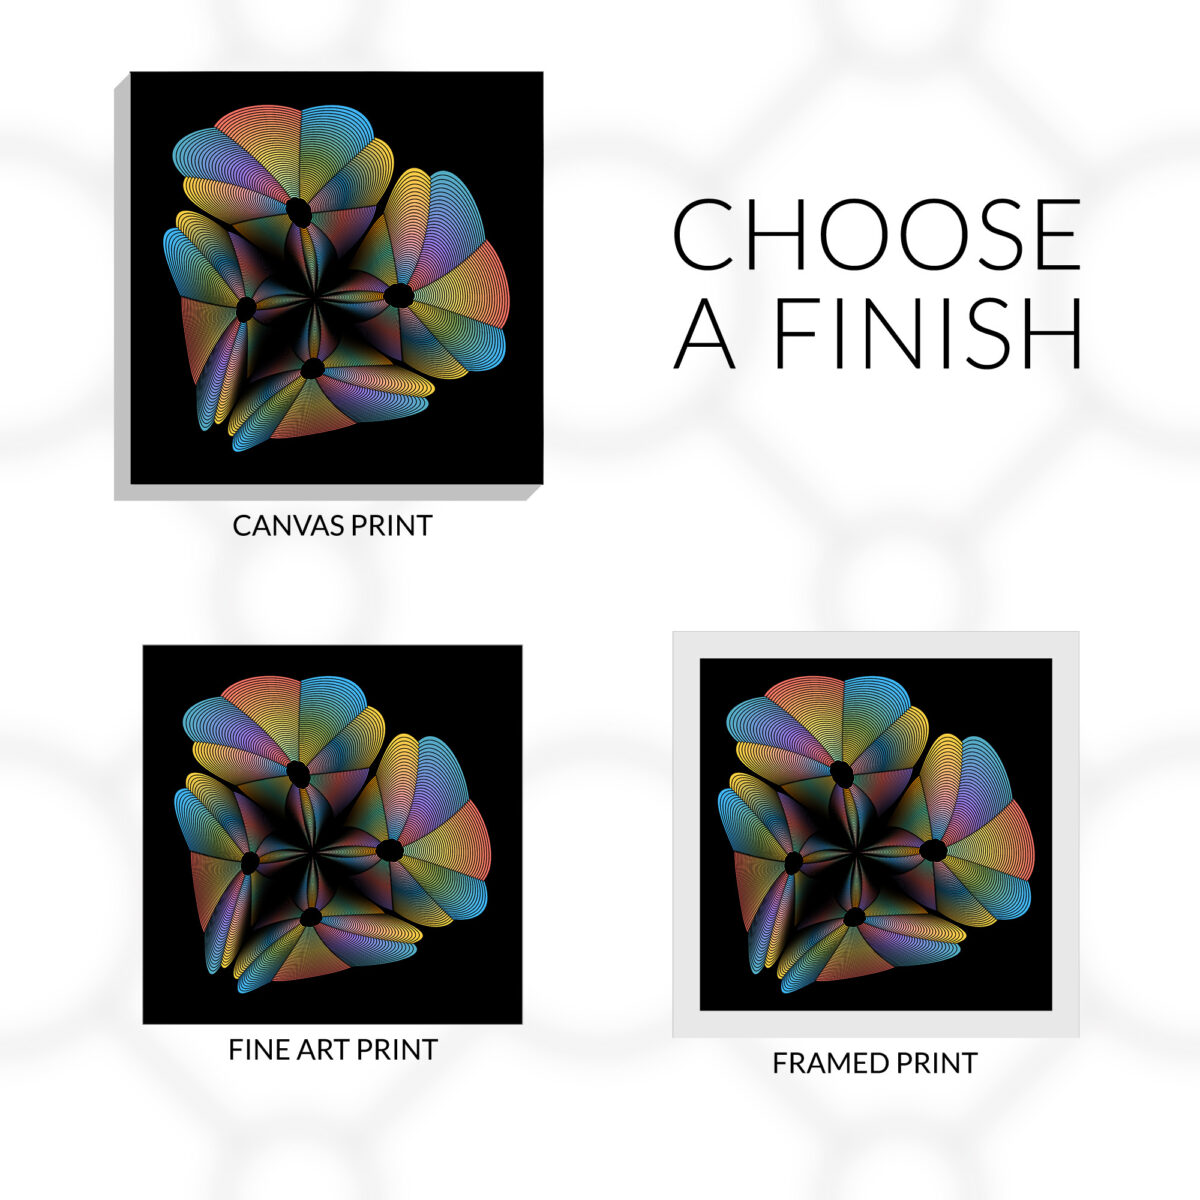 Big Bang design choose a finish. Canvas print, fine art print, or framed fine art print.